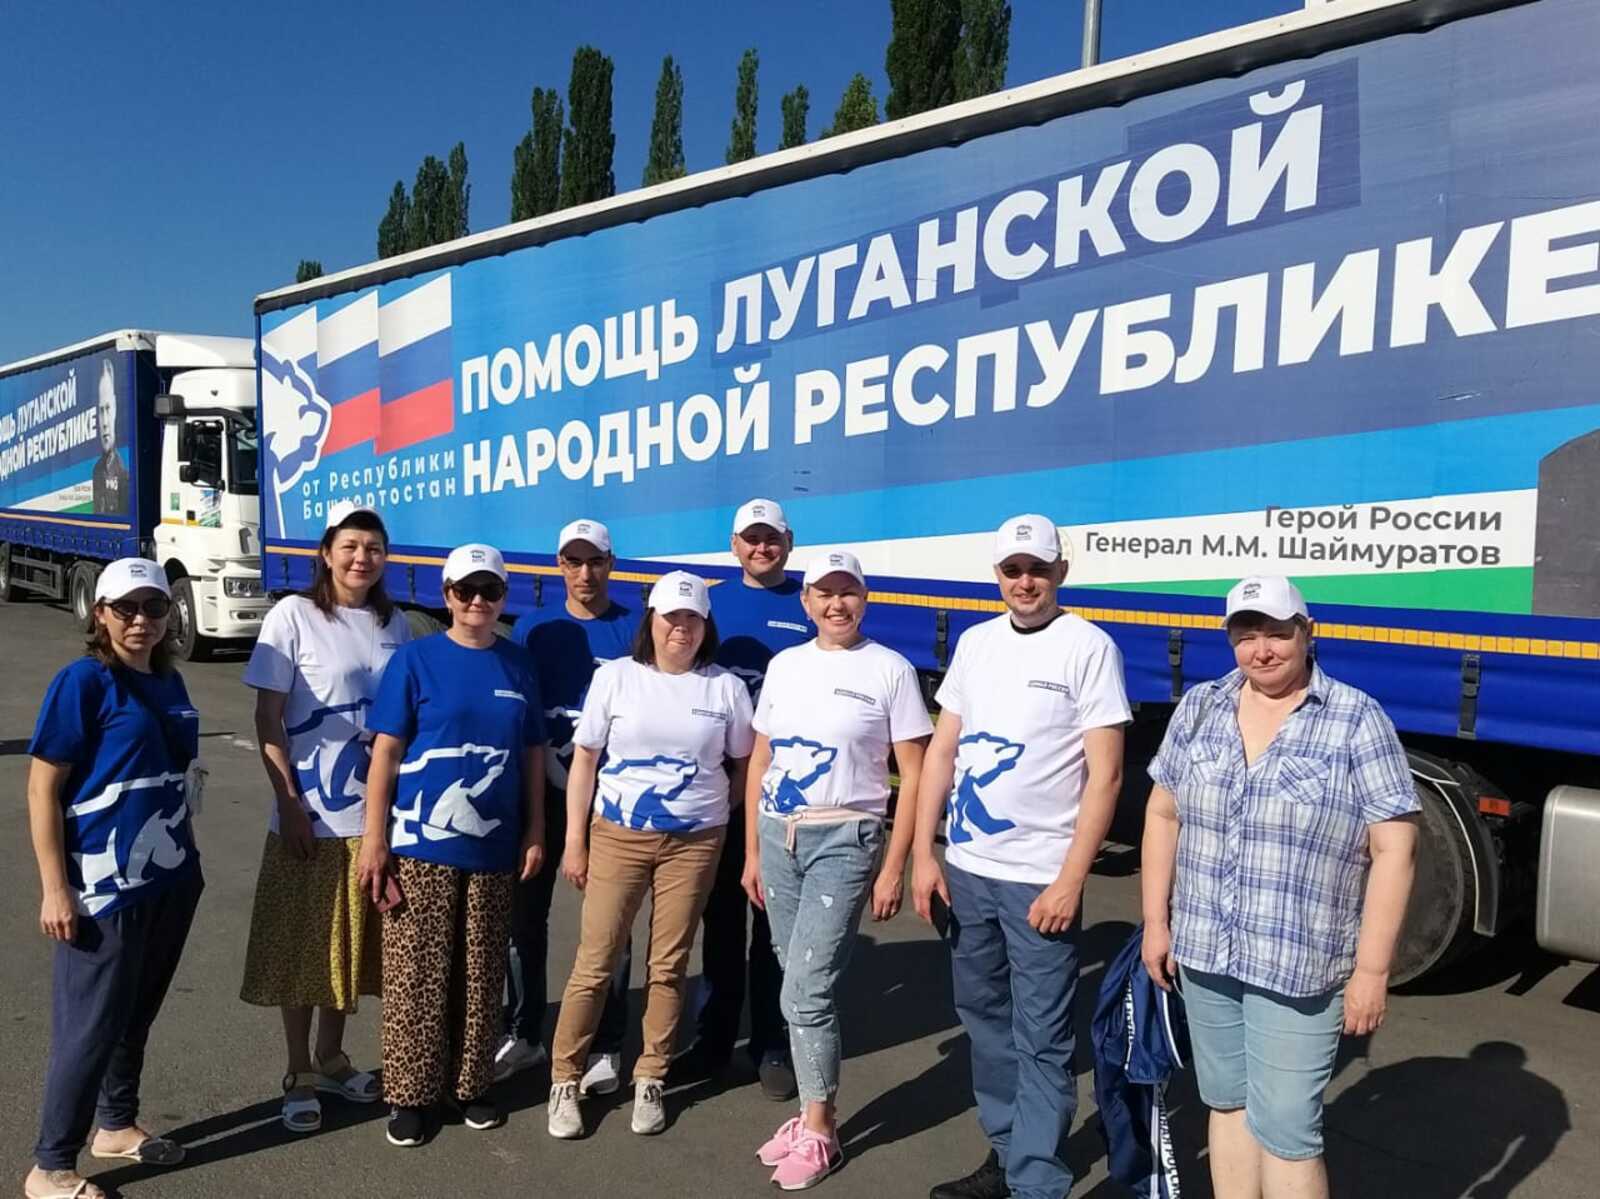 Врач из Башкирии добровольно отправилась на Донбасс для оказания медпомощи жителям Донбасса